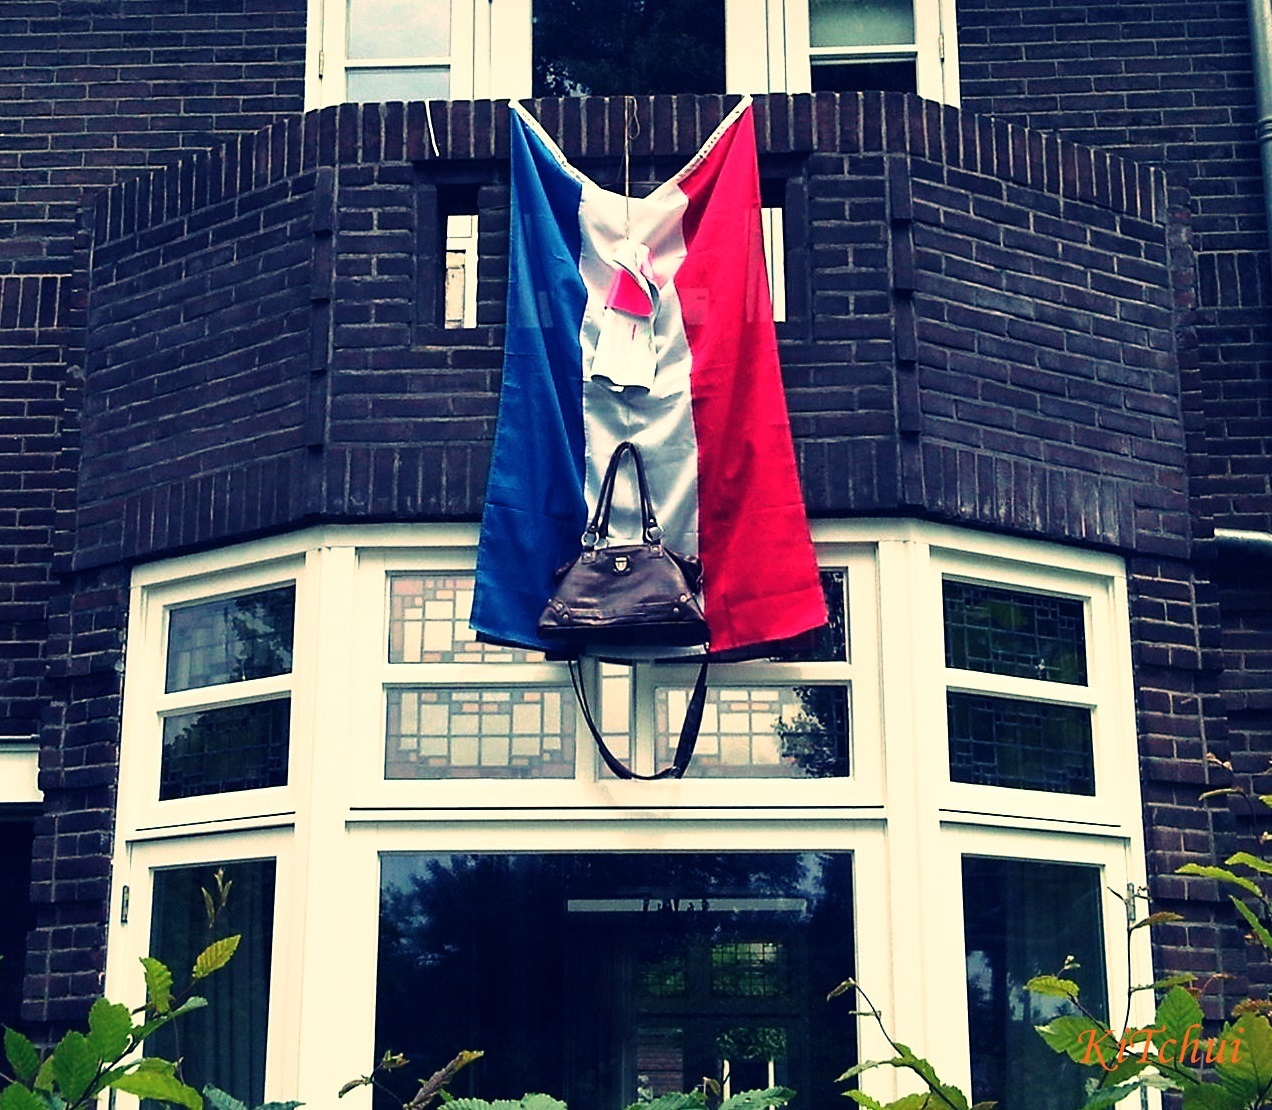 每年六月走進荷蘭的住宅區裡，時時可見荷蘭國旗與各式書包高掛於屋前的景象